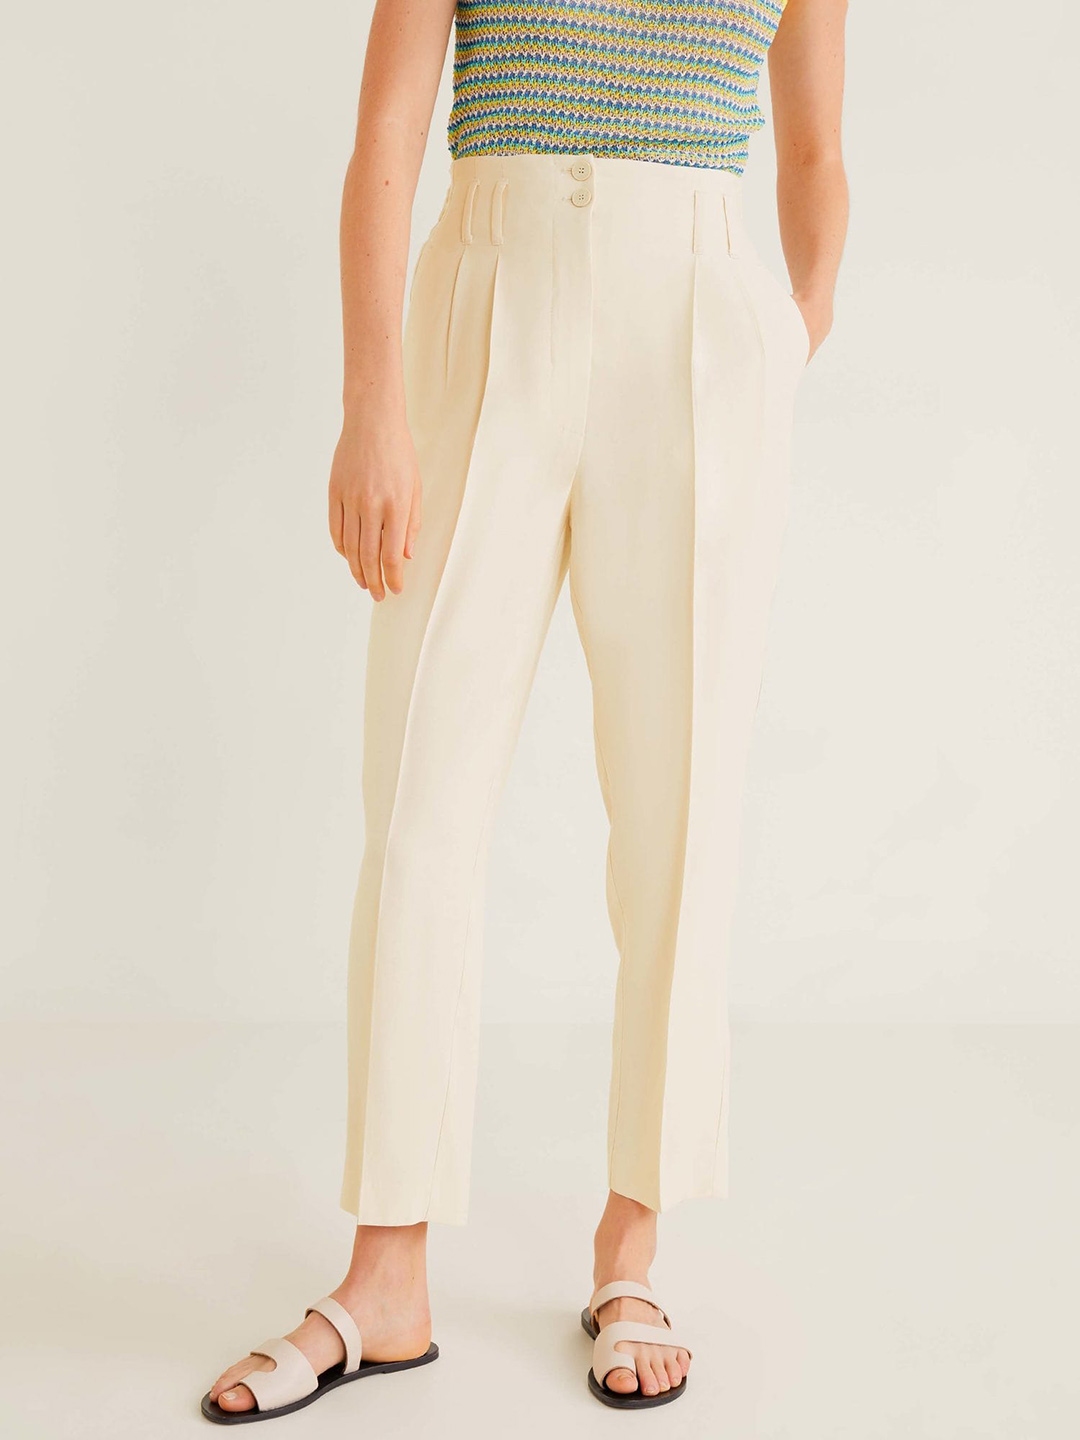 Buy Beige Trousers  Pants for Women by ALLEN SOLLY Online  Ajiocom